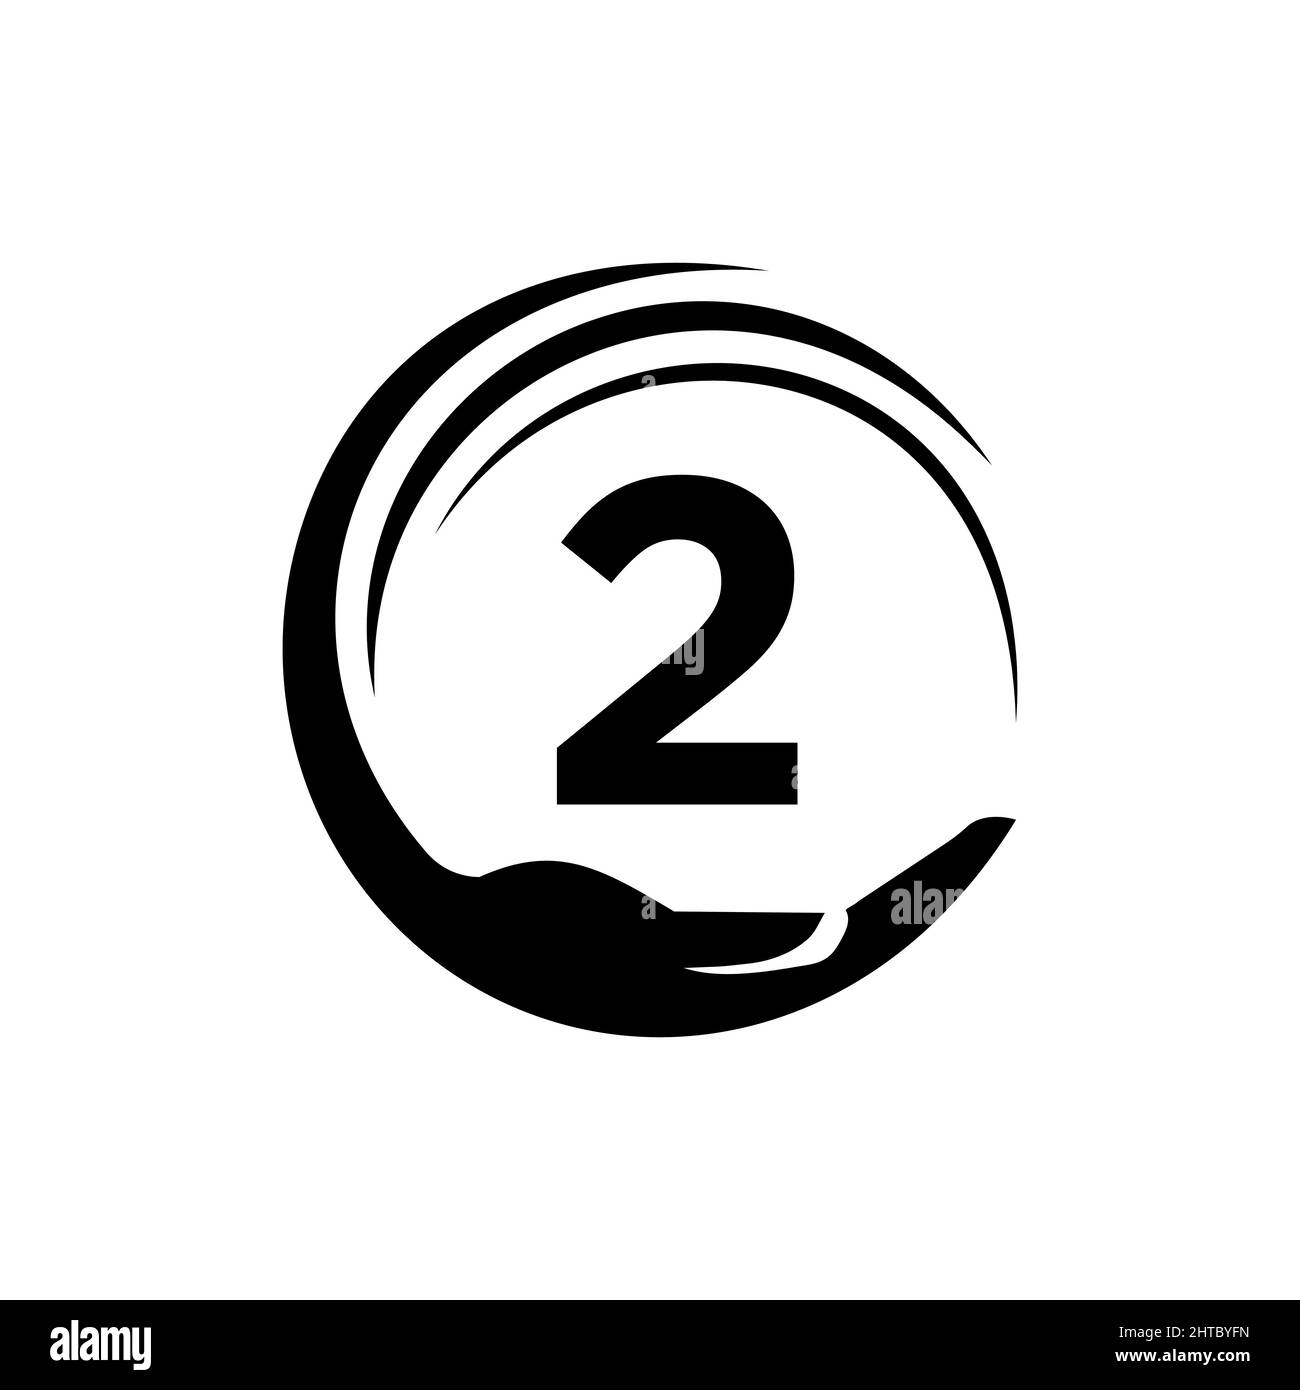 Vorlage Für Charity-Logo Auf Brief 2. Initial Unity Foundation Human Logo Sign. Unity Team Work Logo-Design Mit Vorlage Für 2 Buchstaben Stock Vektor